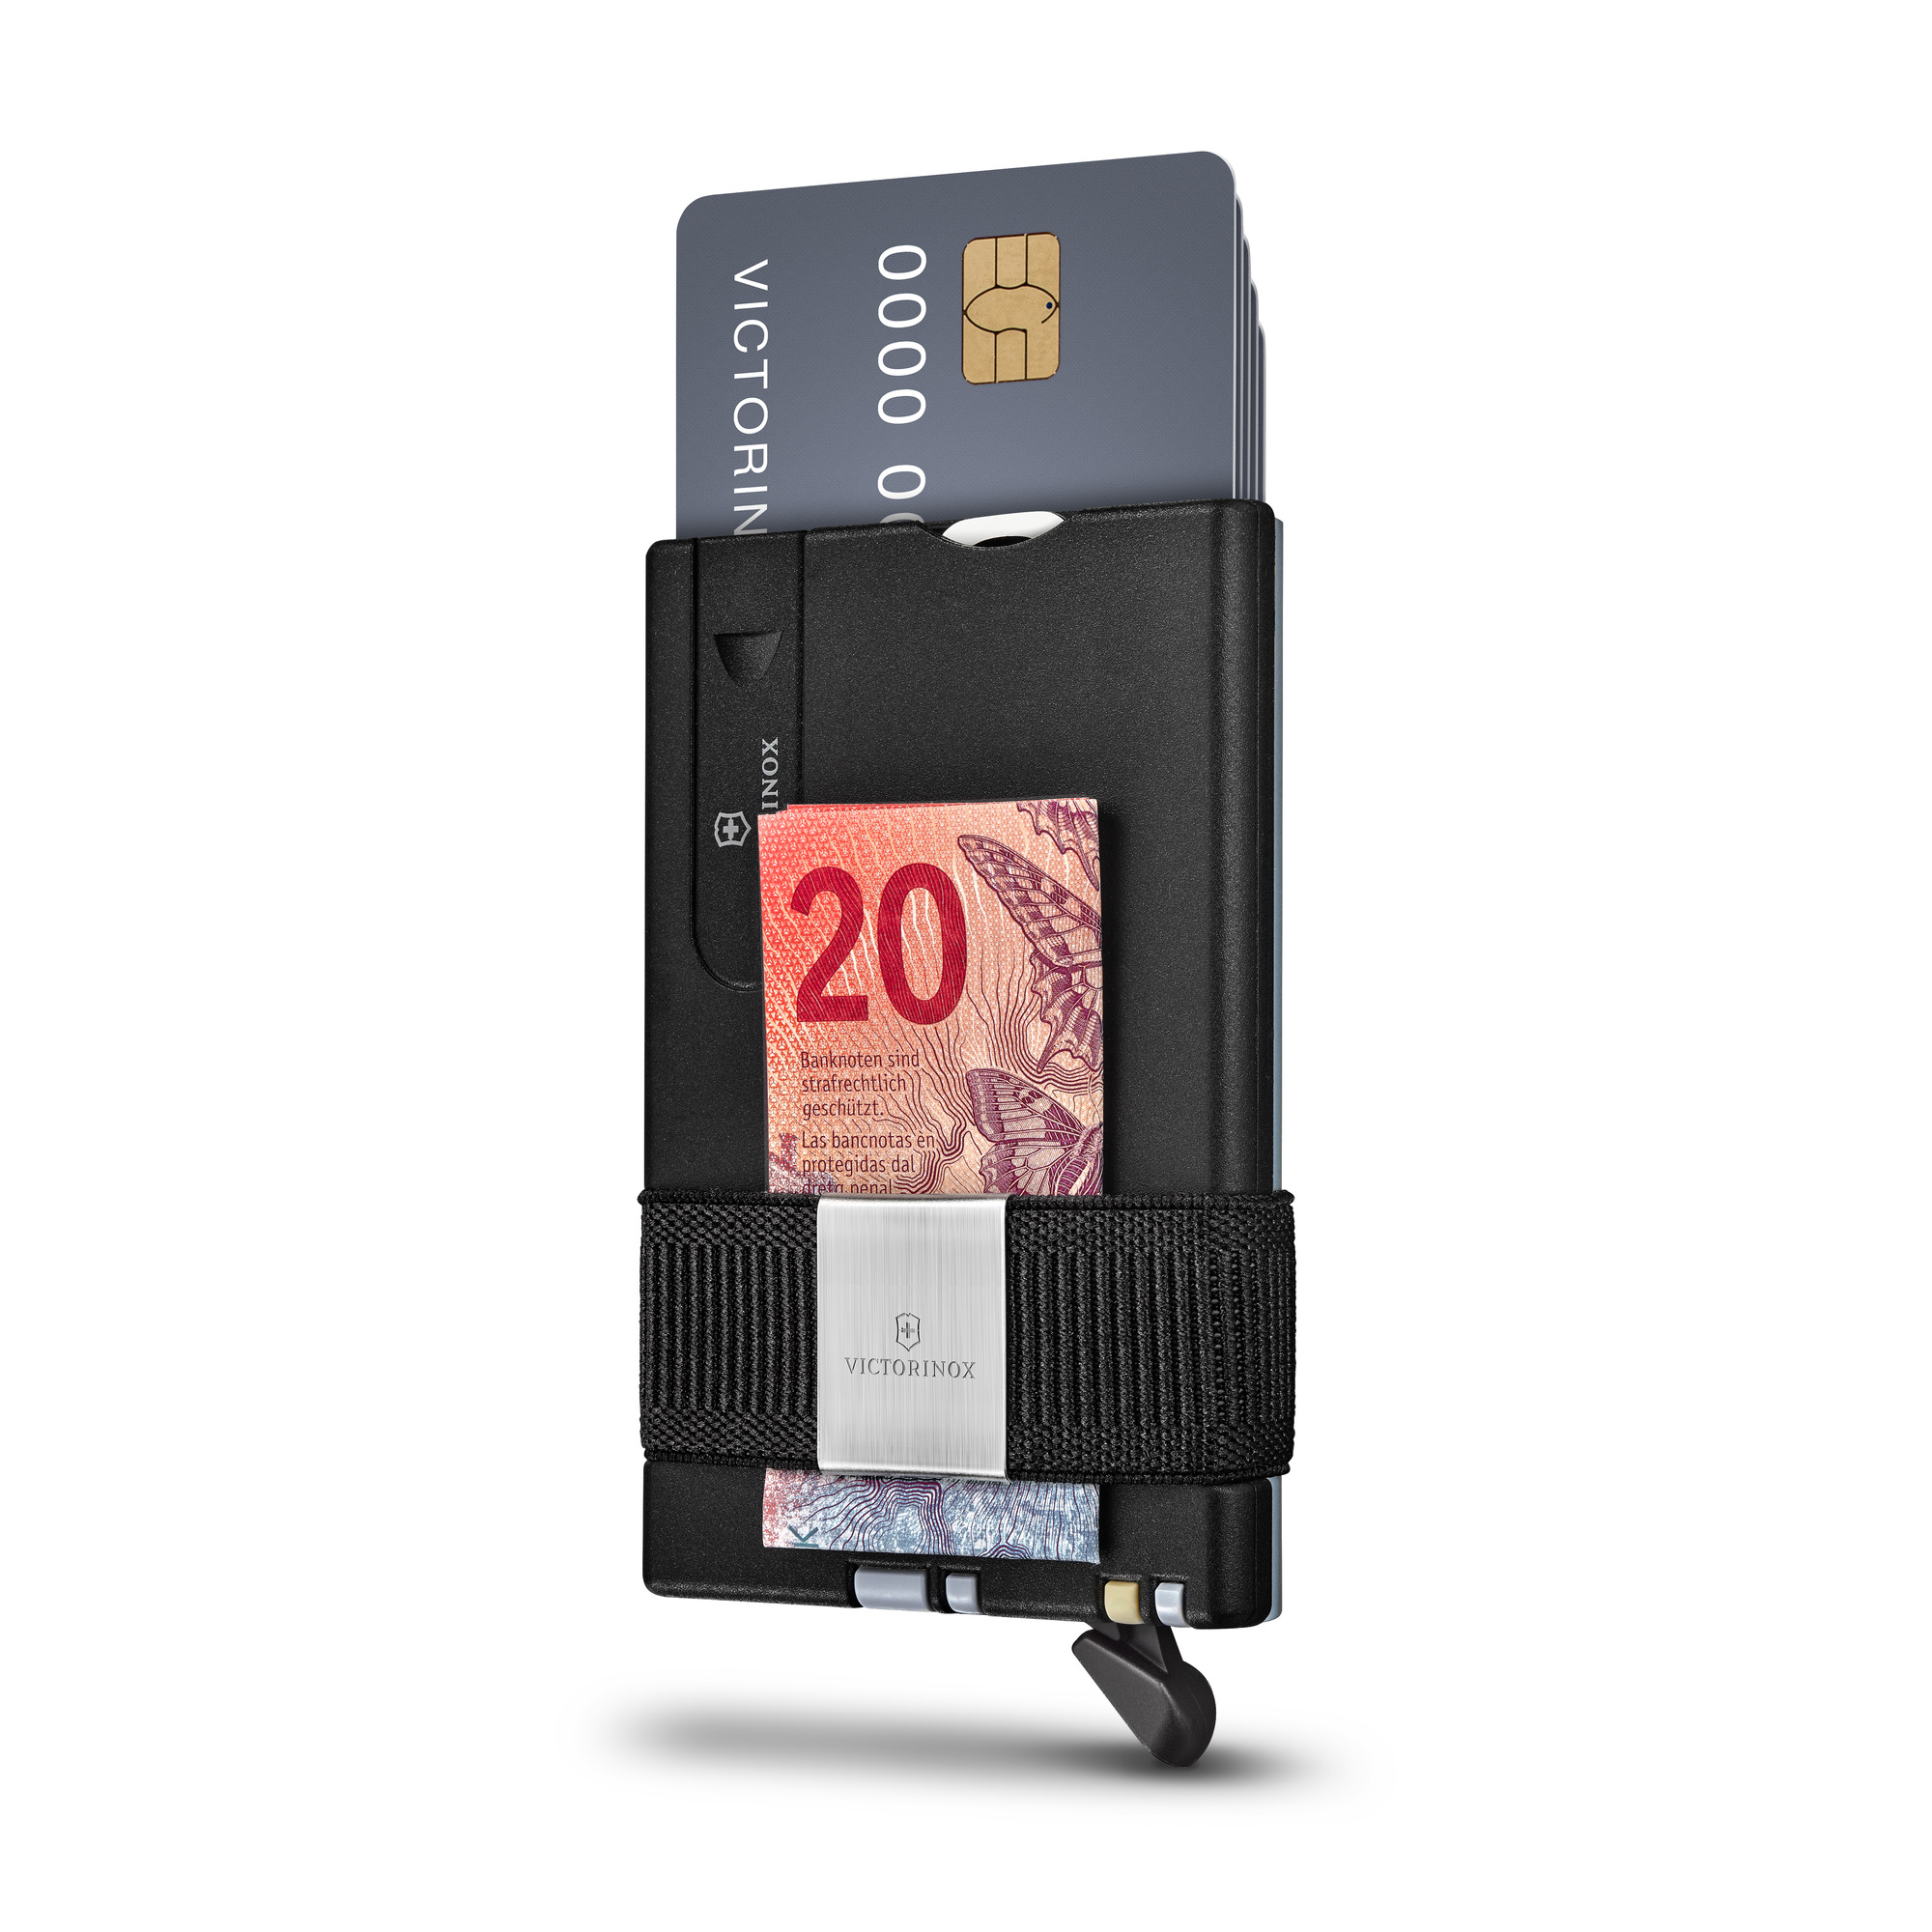 Victorinox Smart Card Wallet, Sharp Gray